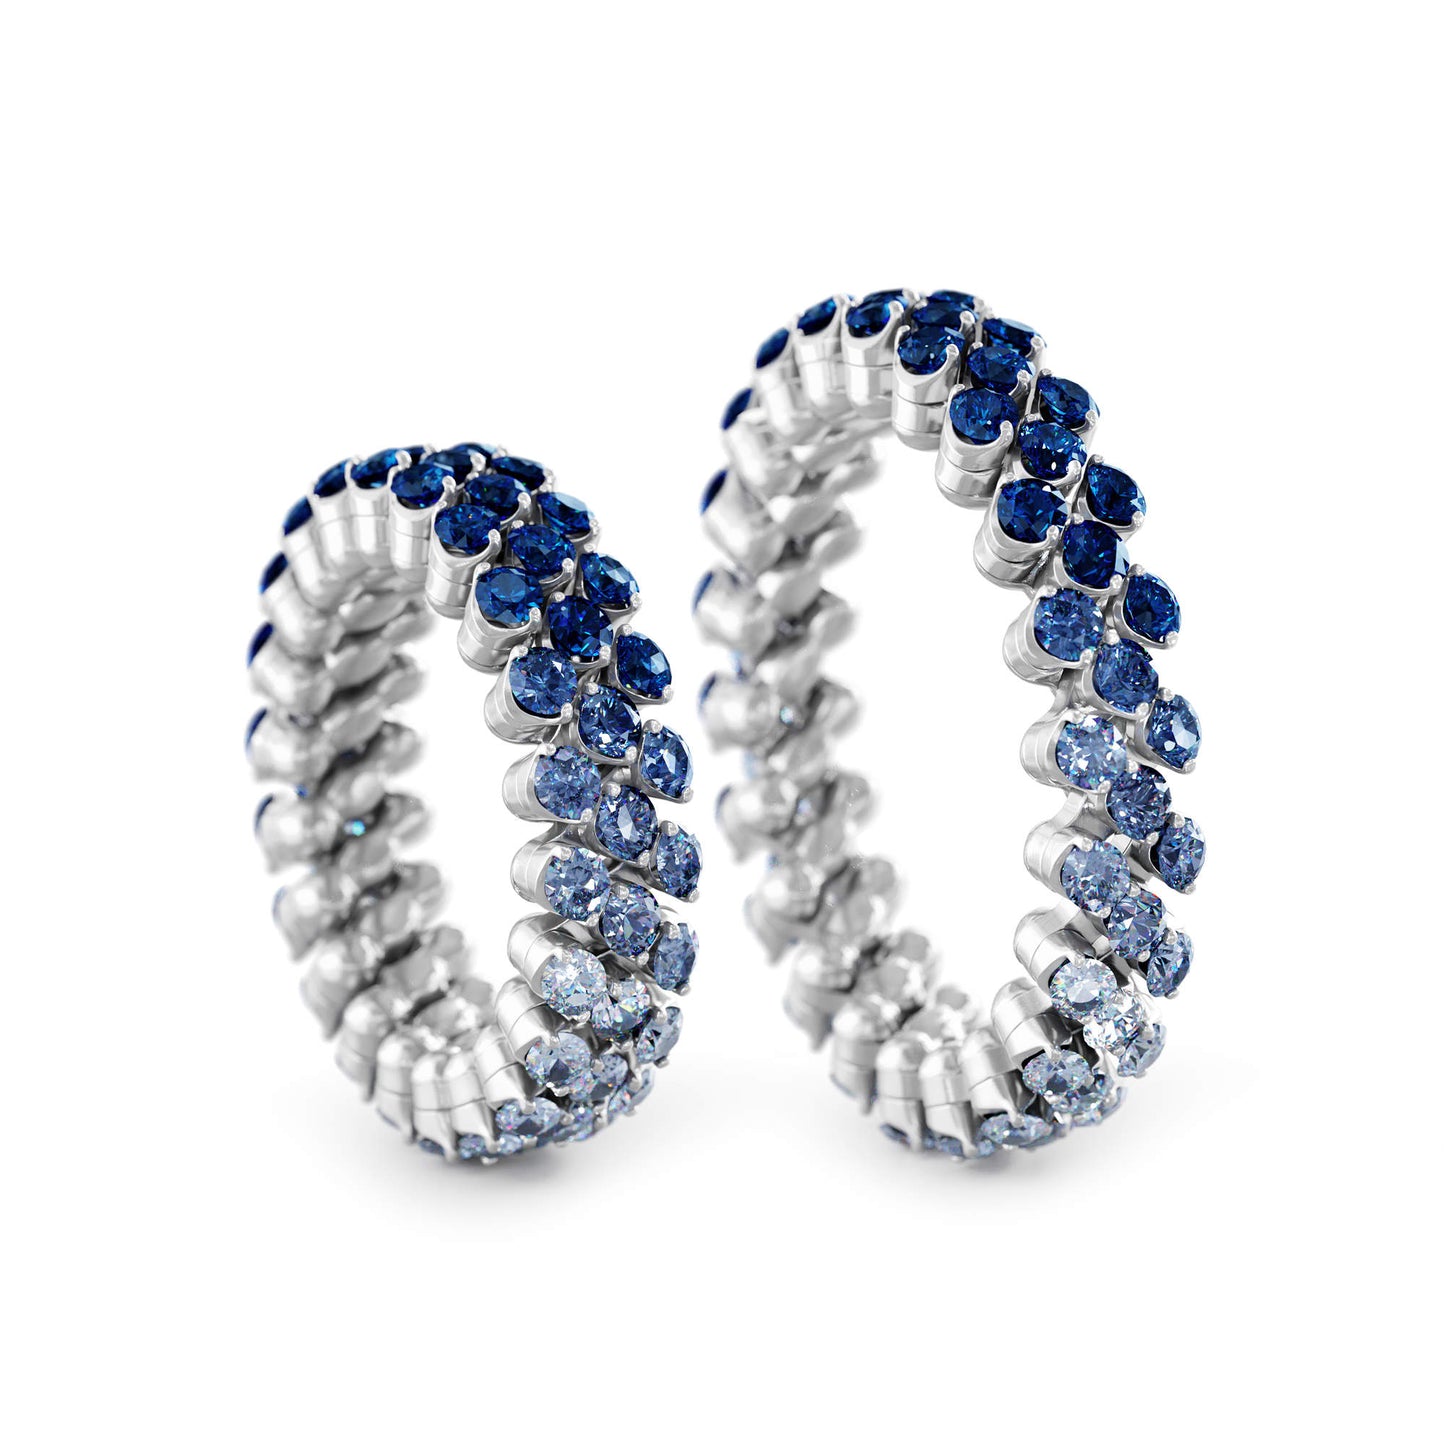 Brevetto Multi-Size Ring von Serafino Consoli online kaufen (Ref. RMS 3F2 WG BS SFT)